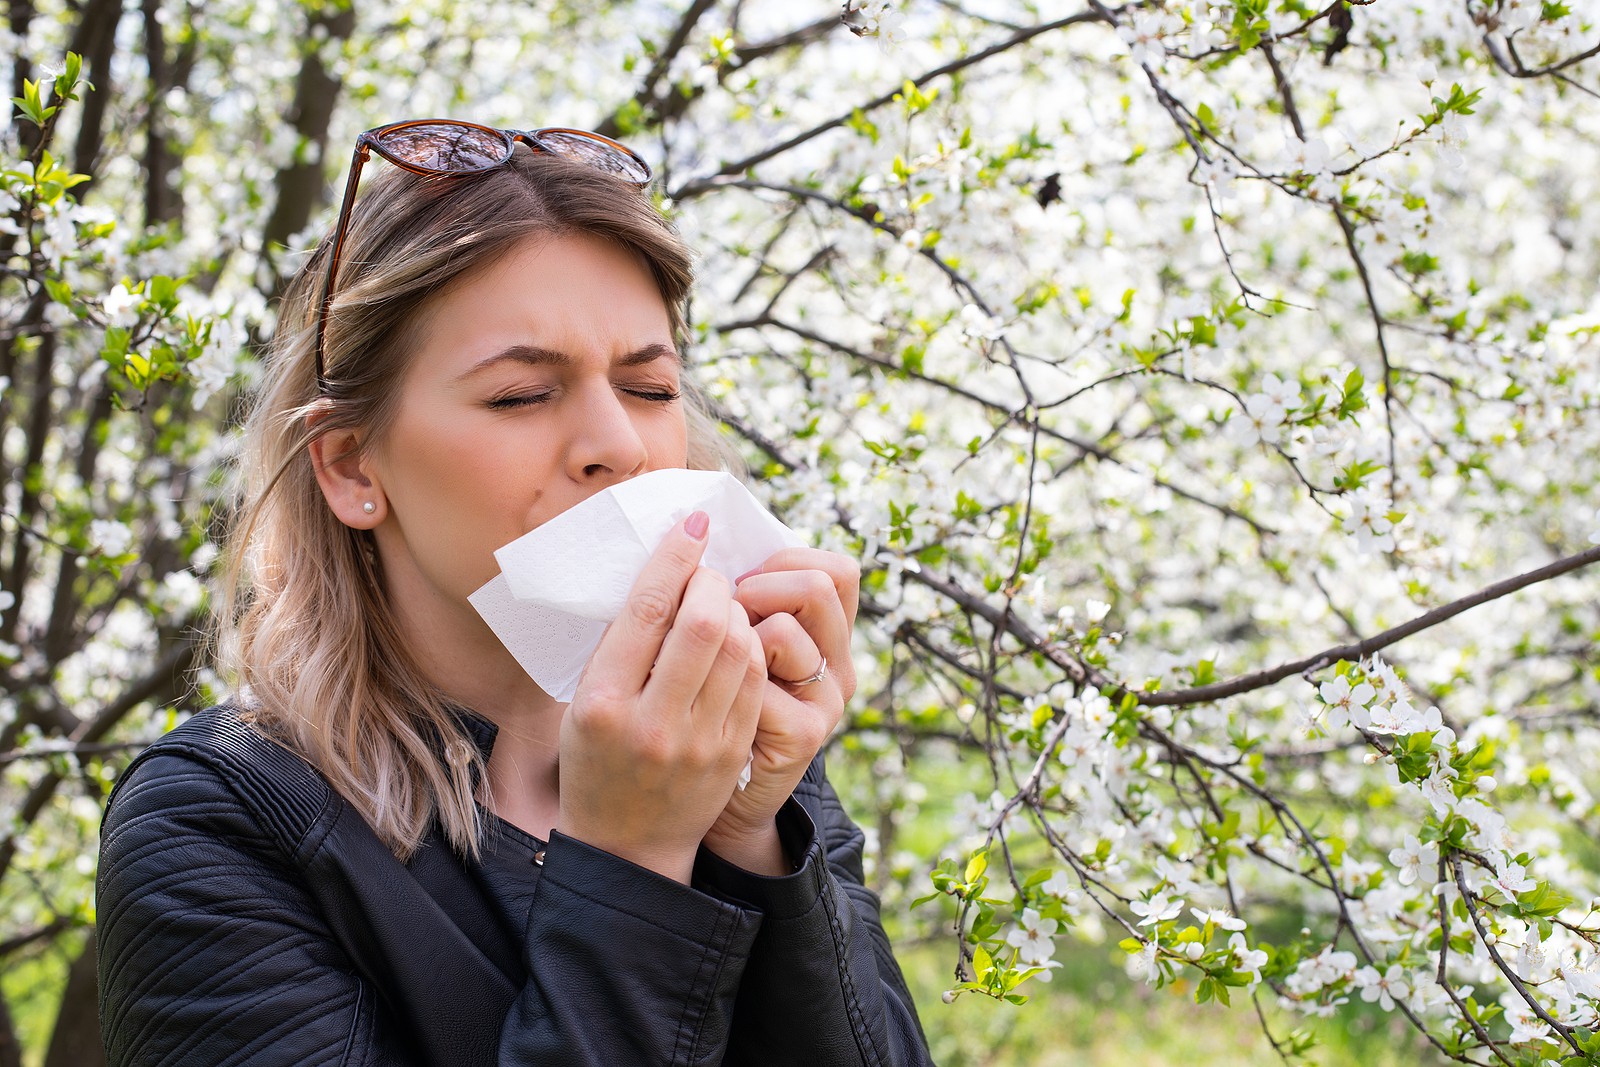 seasonal allergies affect eyes